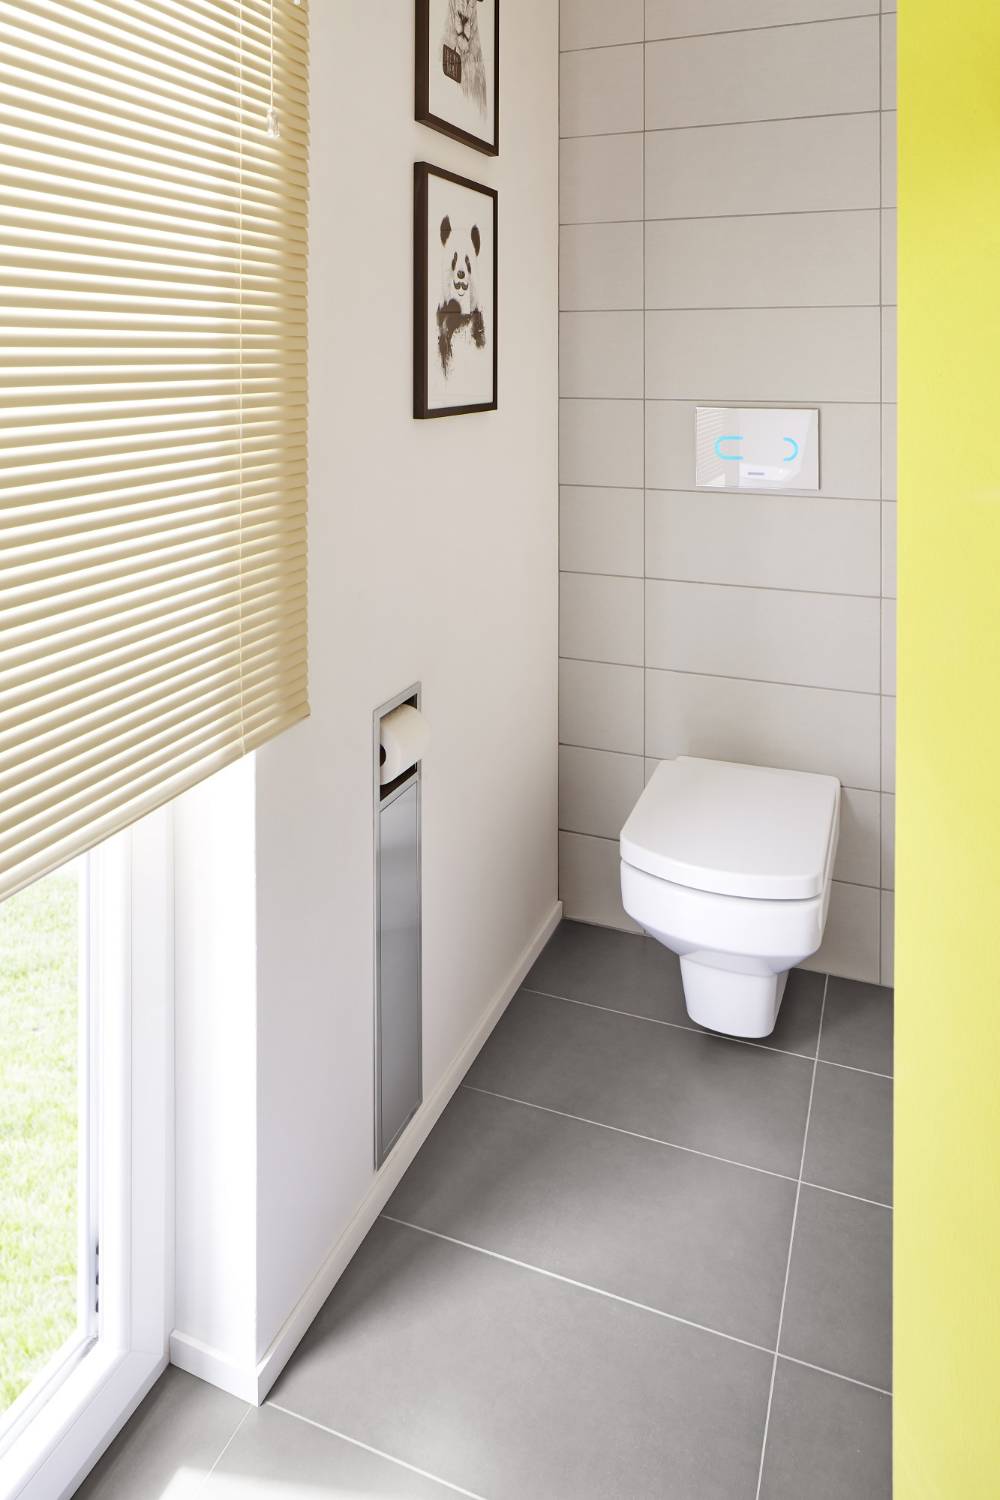 Brush Holder and Paperholder - Toilet roll holder